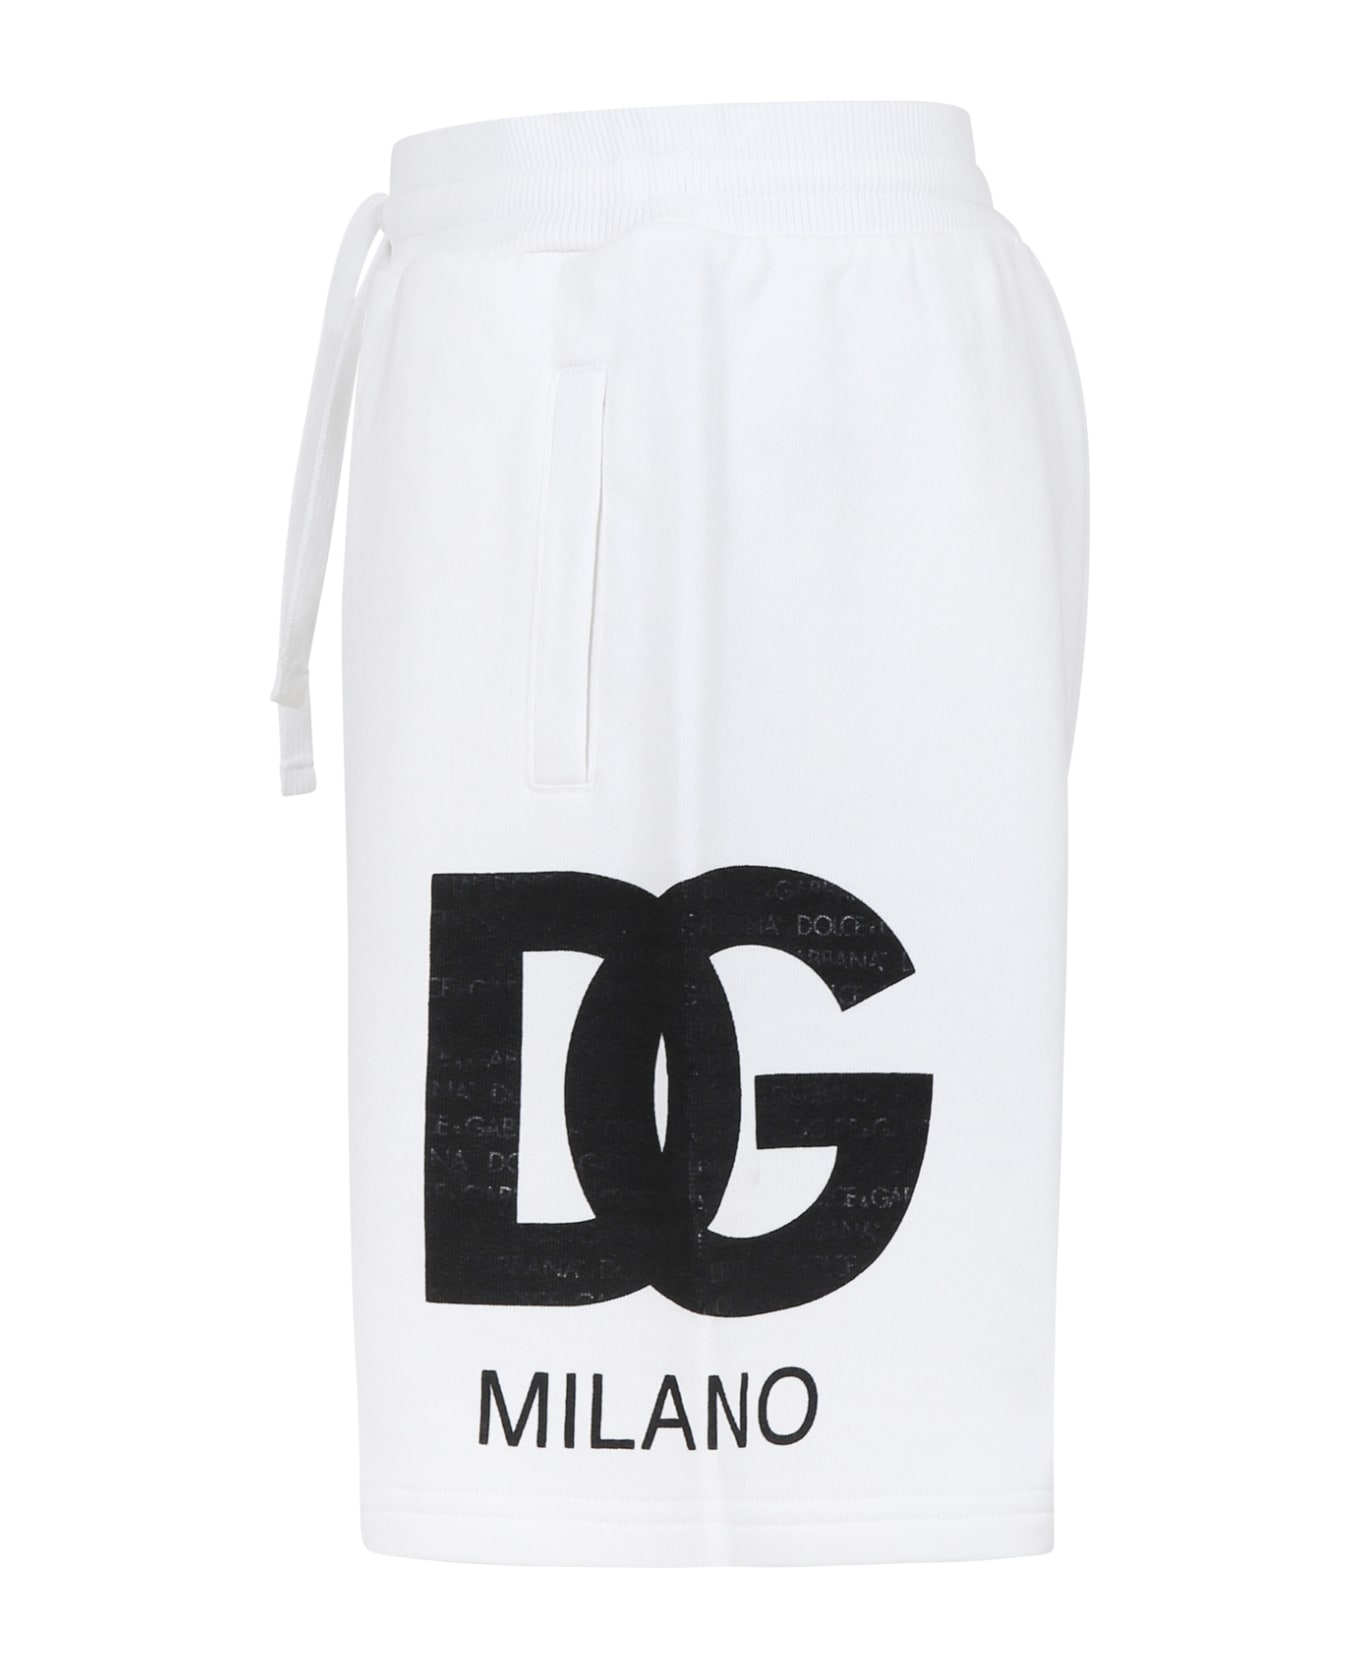 Dolce & Gabbana White Shorts For Boy With Iconic Monogram - Bianco Ottico